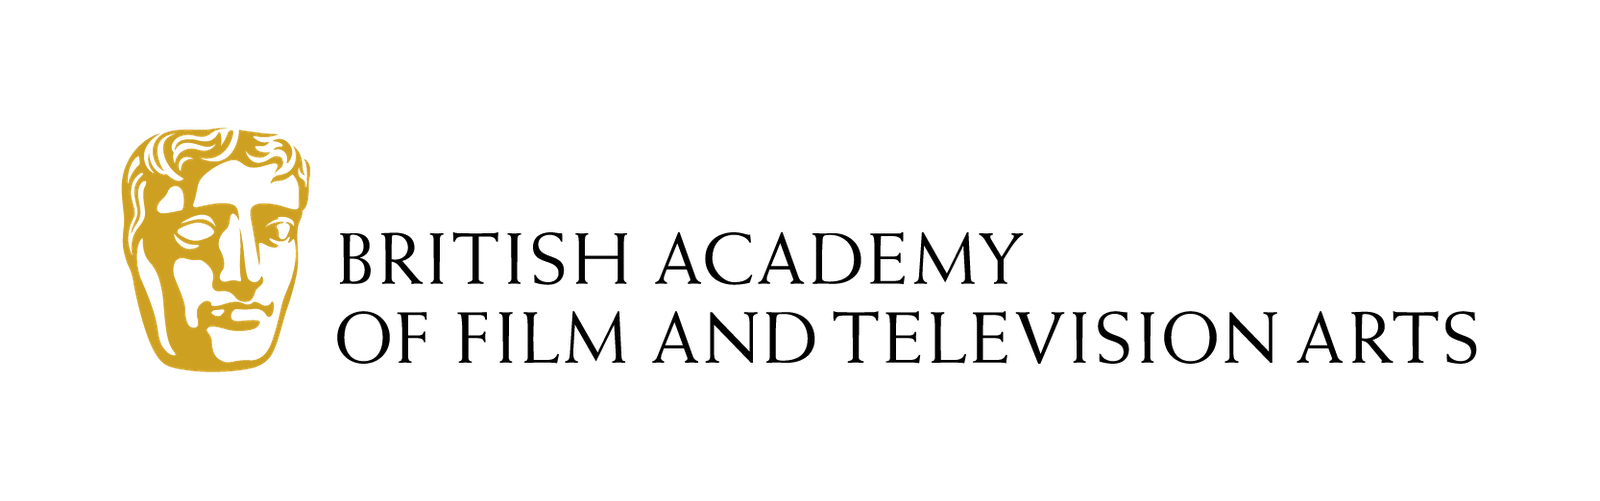 Logotipo Oficial de BAFTA - Wasterbull Media